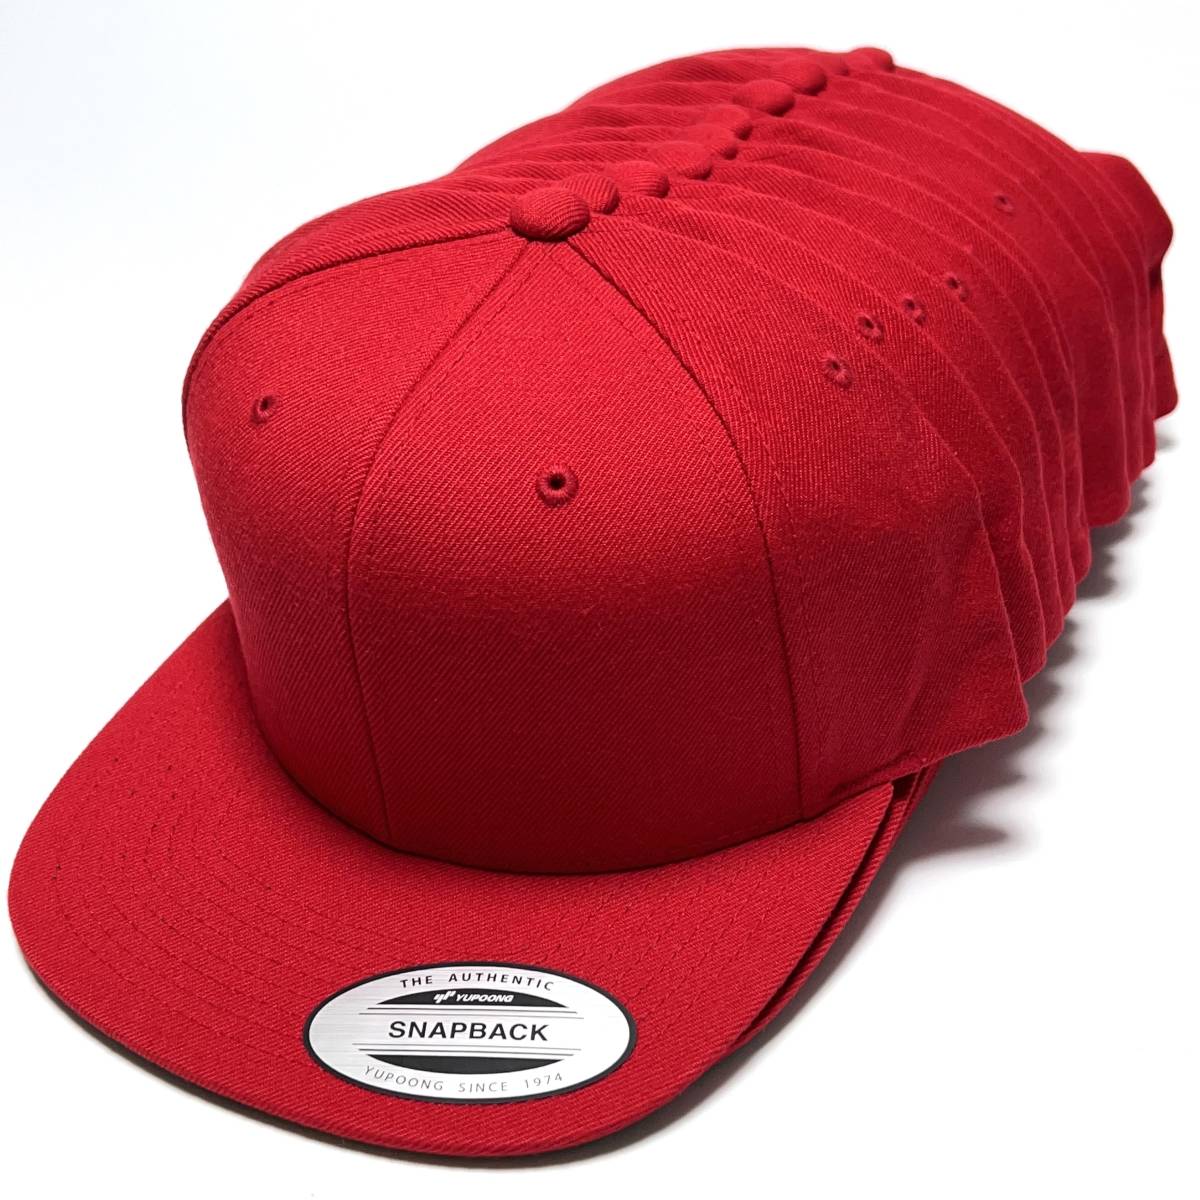 12個セット YUPOONG Classics ベースボール キャップ レッド ユーポン 野球帽 フラットバイザー 赤 無地 まとめ売り 卸 未使用 #noca0087